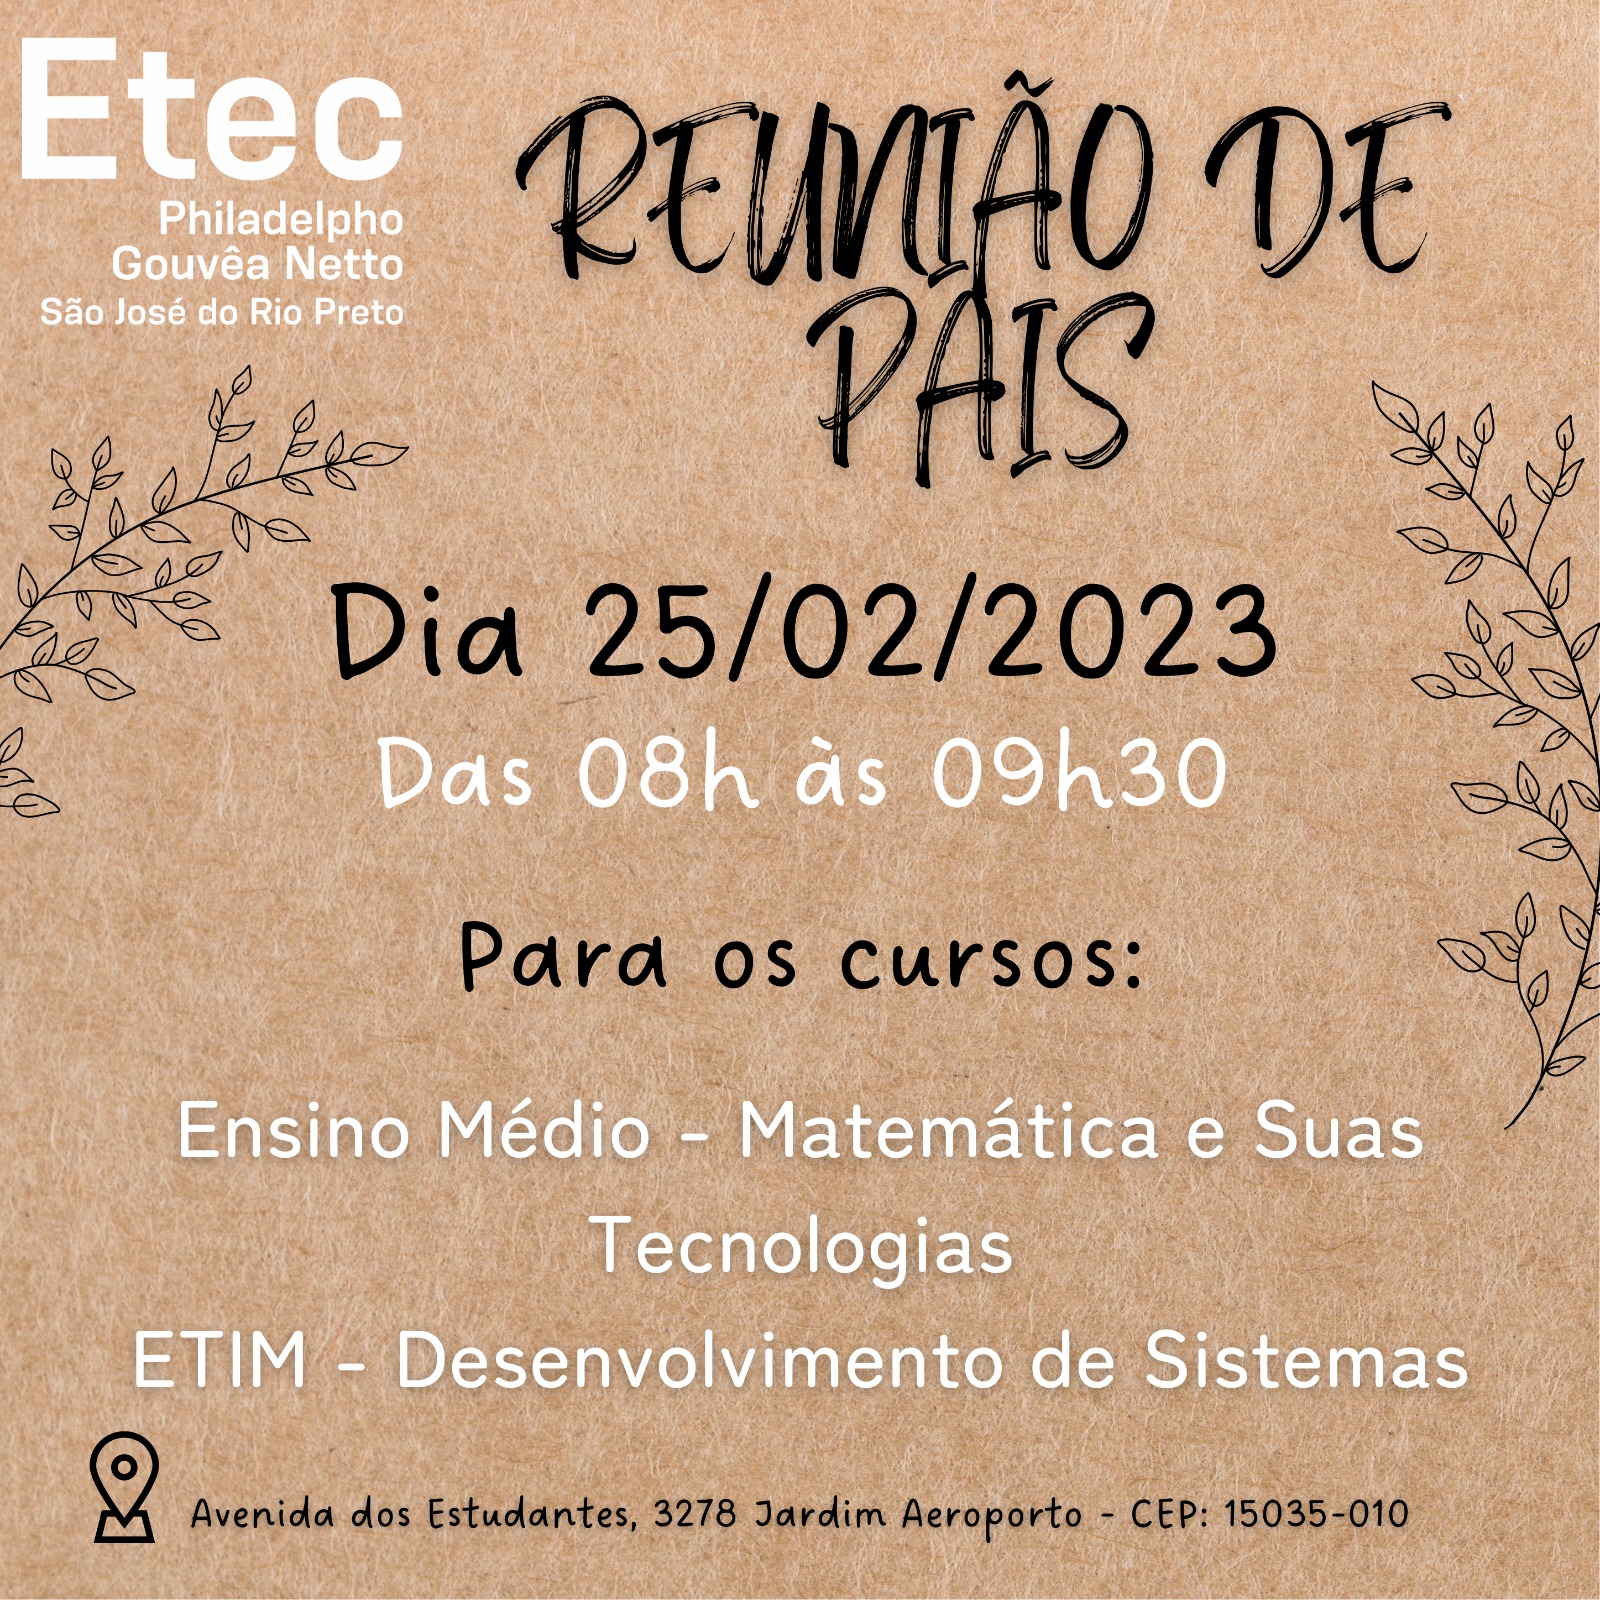 ETEC Philadelpho Gouvêa Netto - Escola Técnica em São José do Rio